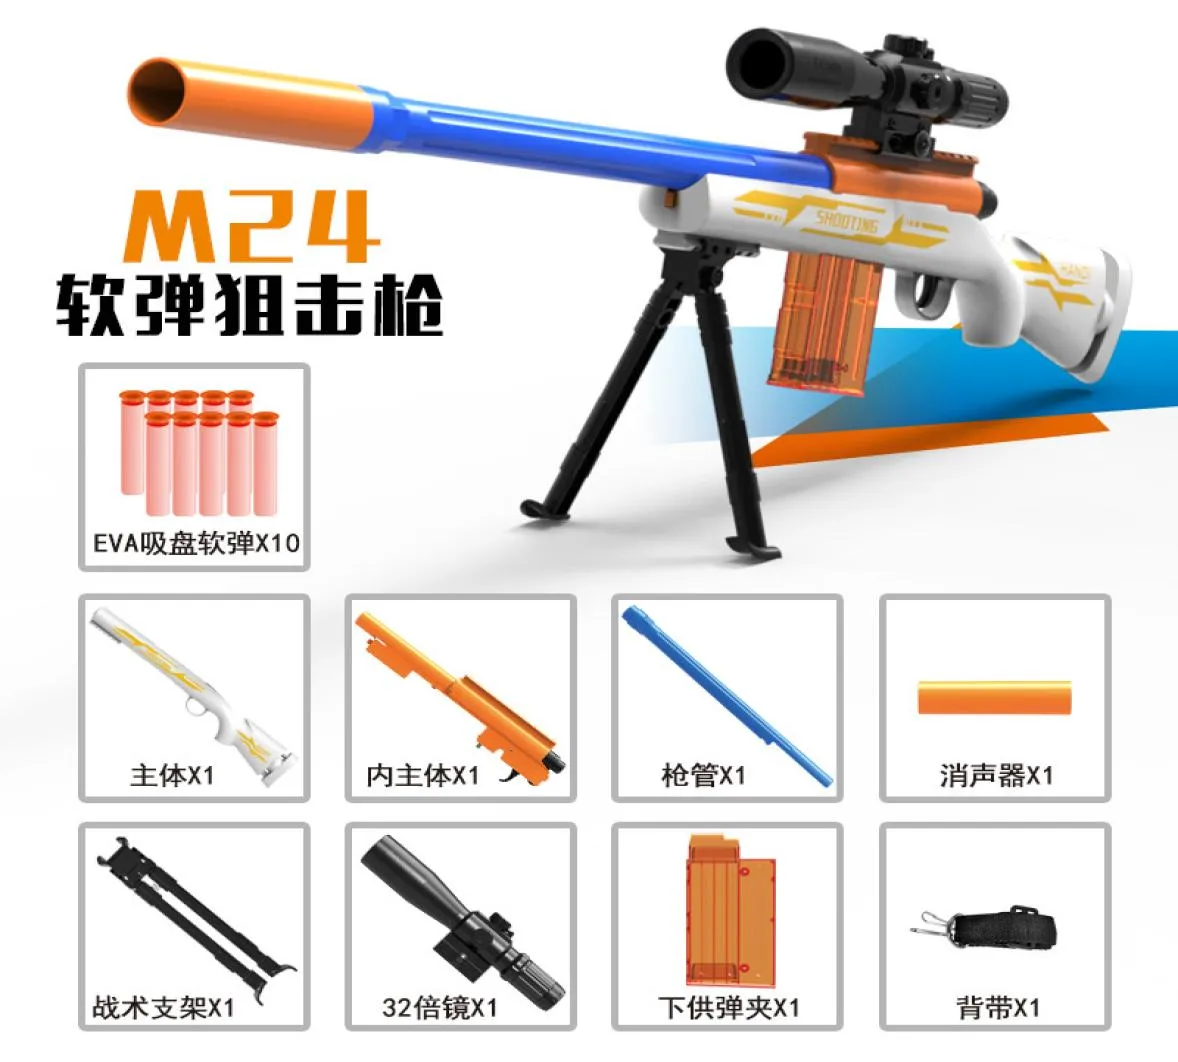 AWM Handmatig speelgoed Gun Blaster Foam Darts Sniper Rifle Machine Shooting Launcher speelgoedmodel voor kinderen jongens verjaardagscadeaus